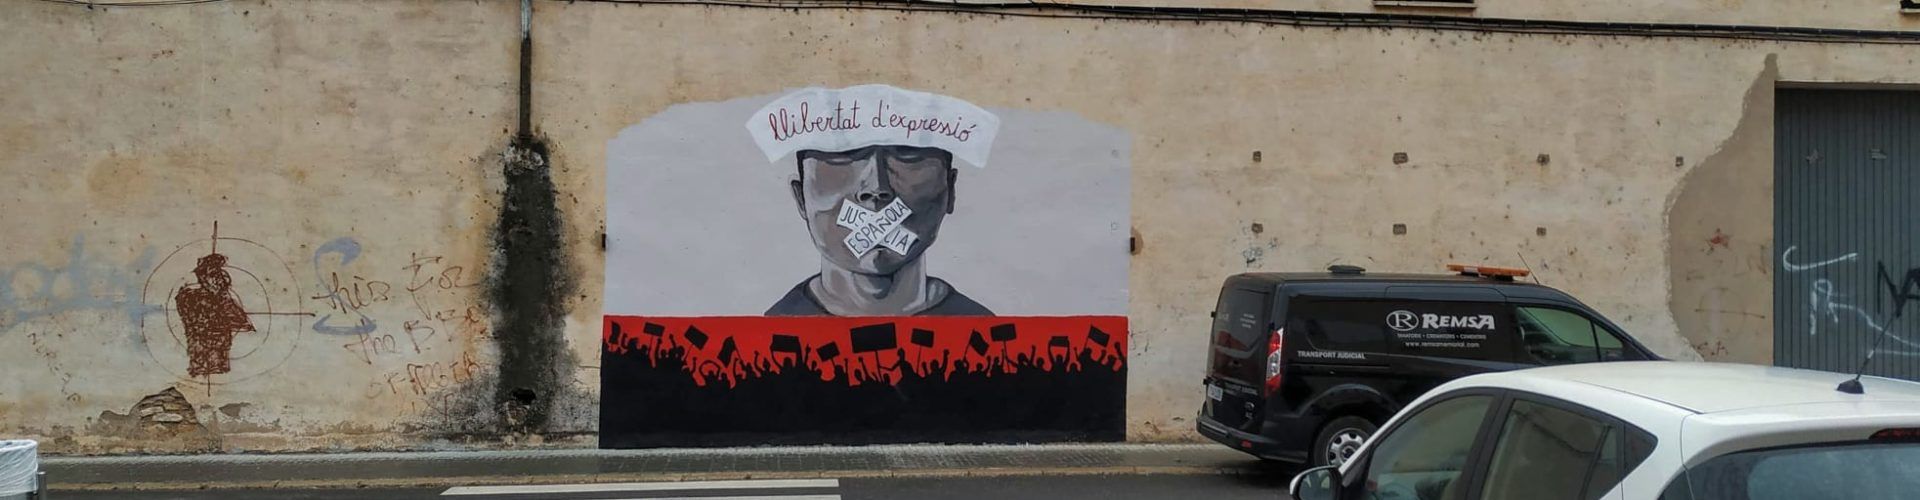 Fotos: Nou mural de Siscó Ferré a Amposta